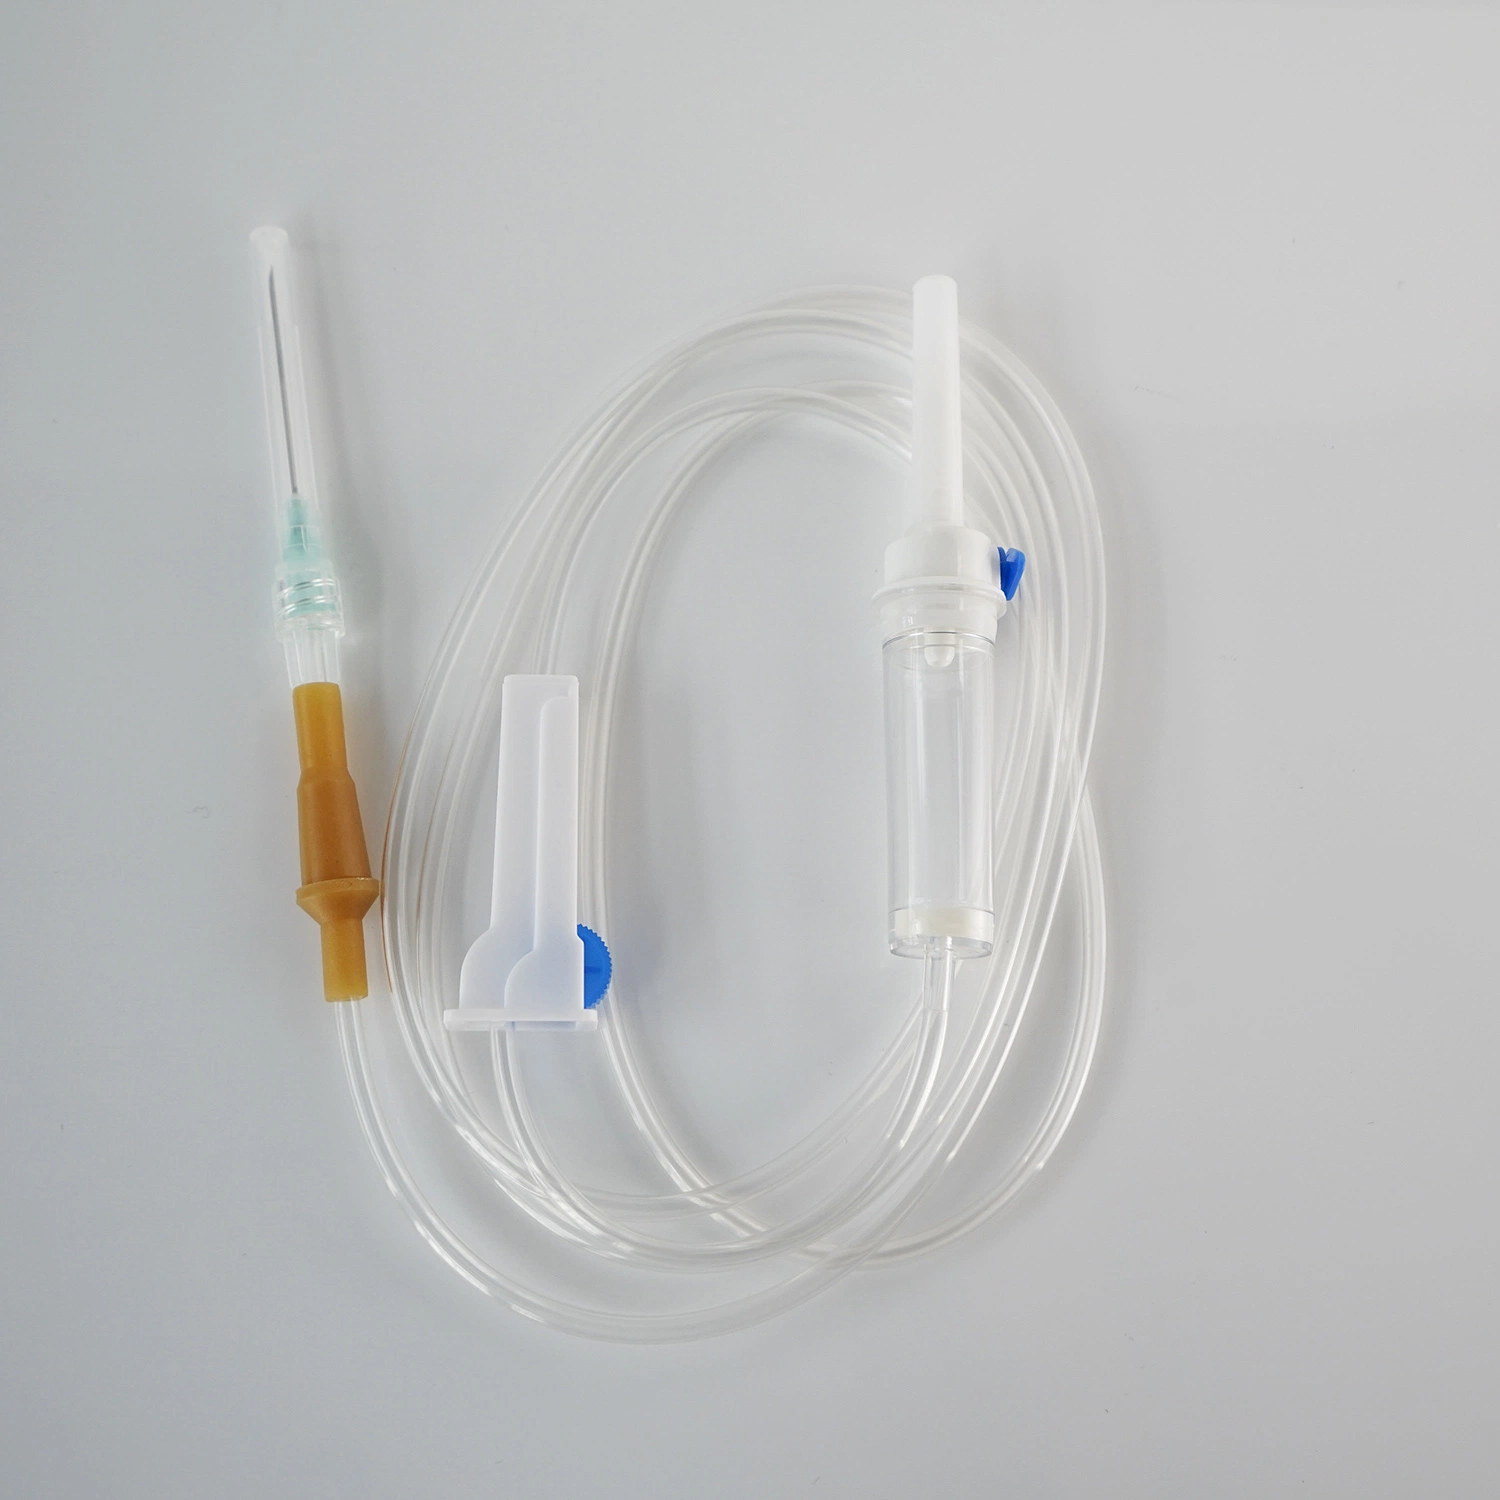 Equipamento médico cirúrgico Soft médico do Hospital para pacientes adultos IV descartável Infusão que permite a infusão com o Needle Luer Slip Lock Portable Infusion Definir bureta do dispositivo